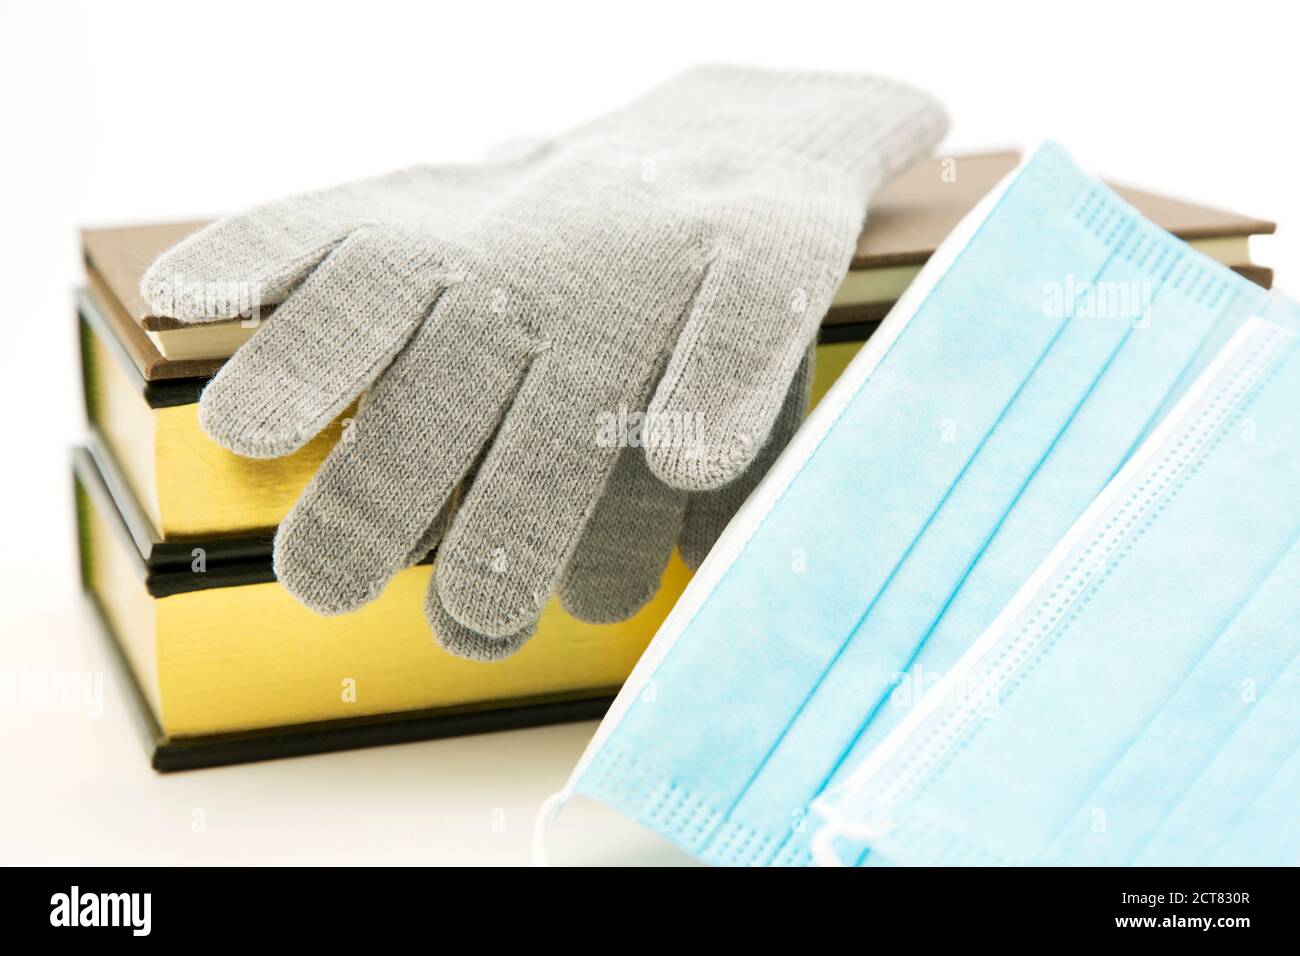 Graue Winterhandschuhe und Bücher, die mit Covid-Masken platziert sind, spiegeln wesentliche persönliche Schutzausrüstung, PSA und Schulausrüstung für die Wintergrippezeit in Corona wider Stockfoto